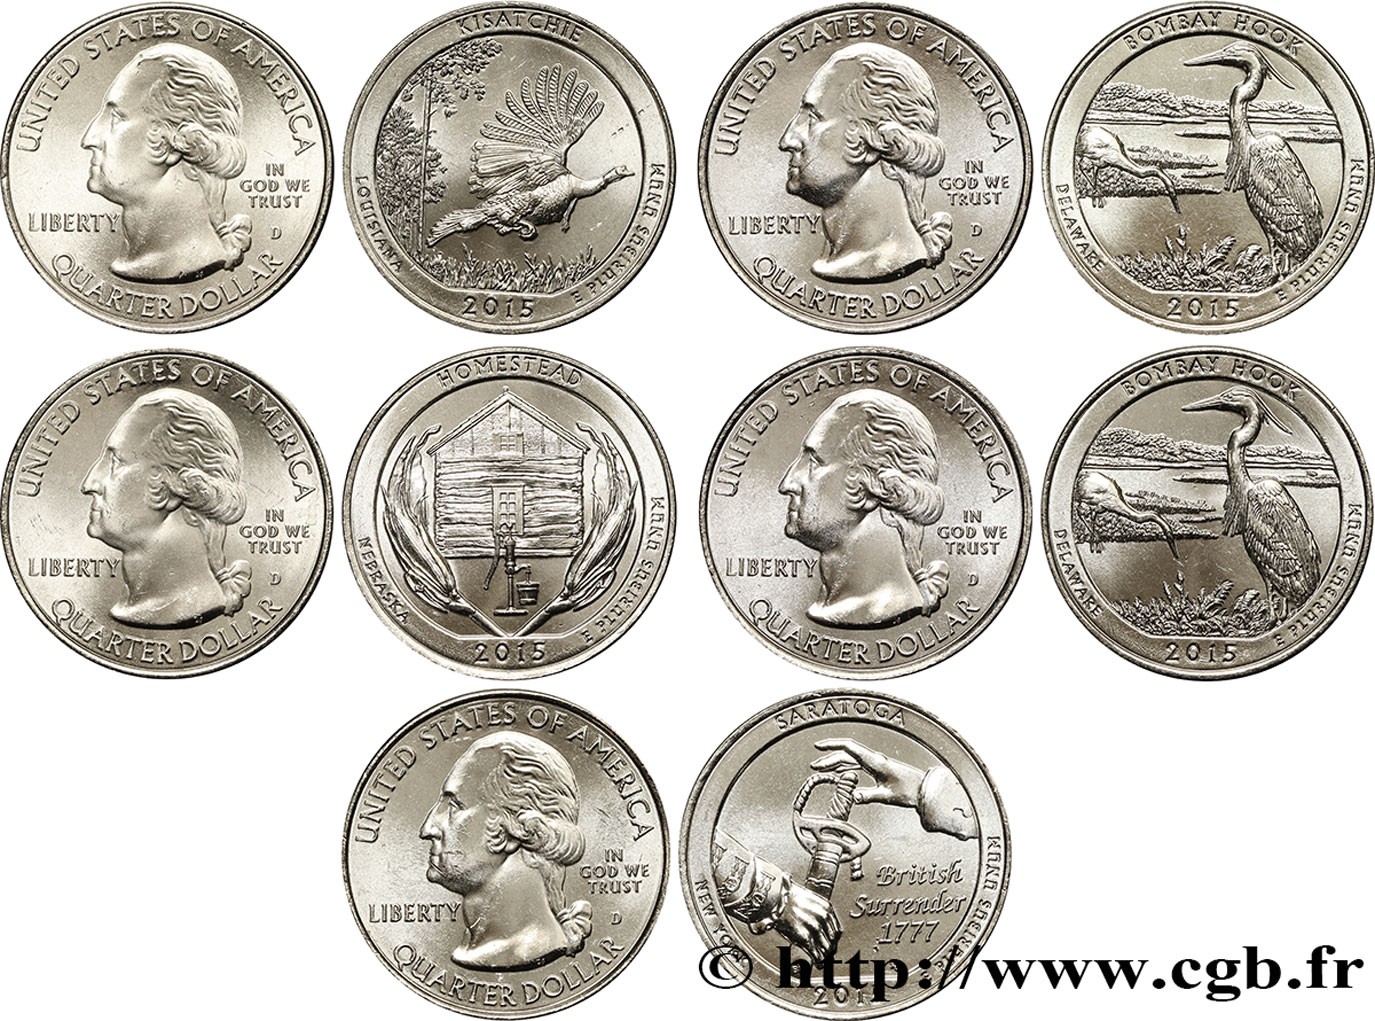 VEREINIGTE STAATEN VON AMERIKA Série complète des 5 monnaies de 1/4 de Dollar 2015 2015 Denver - D fST 